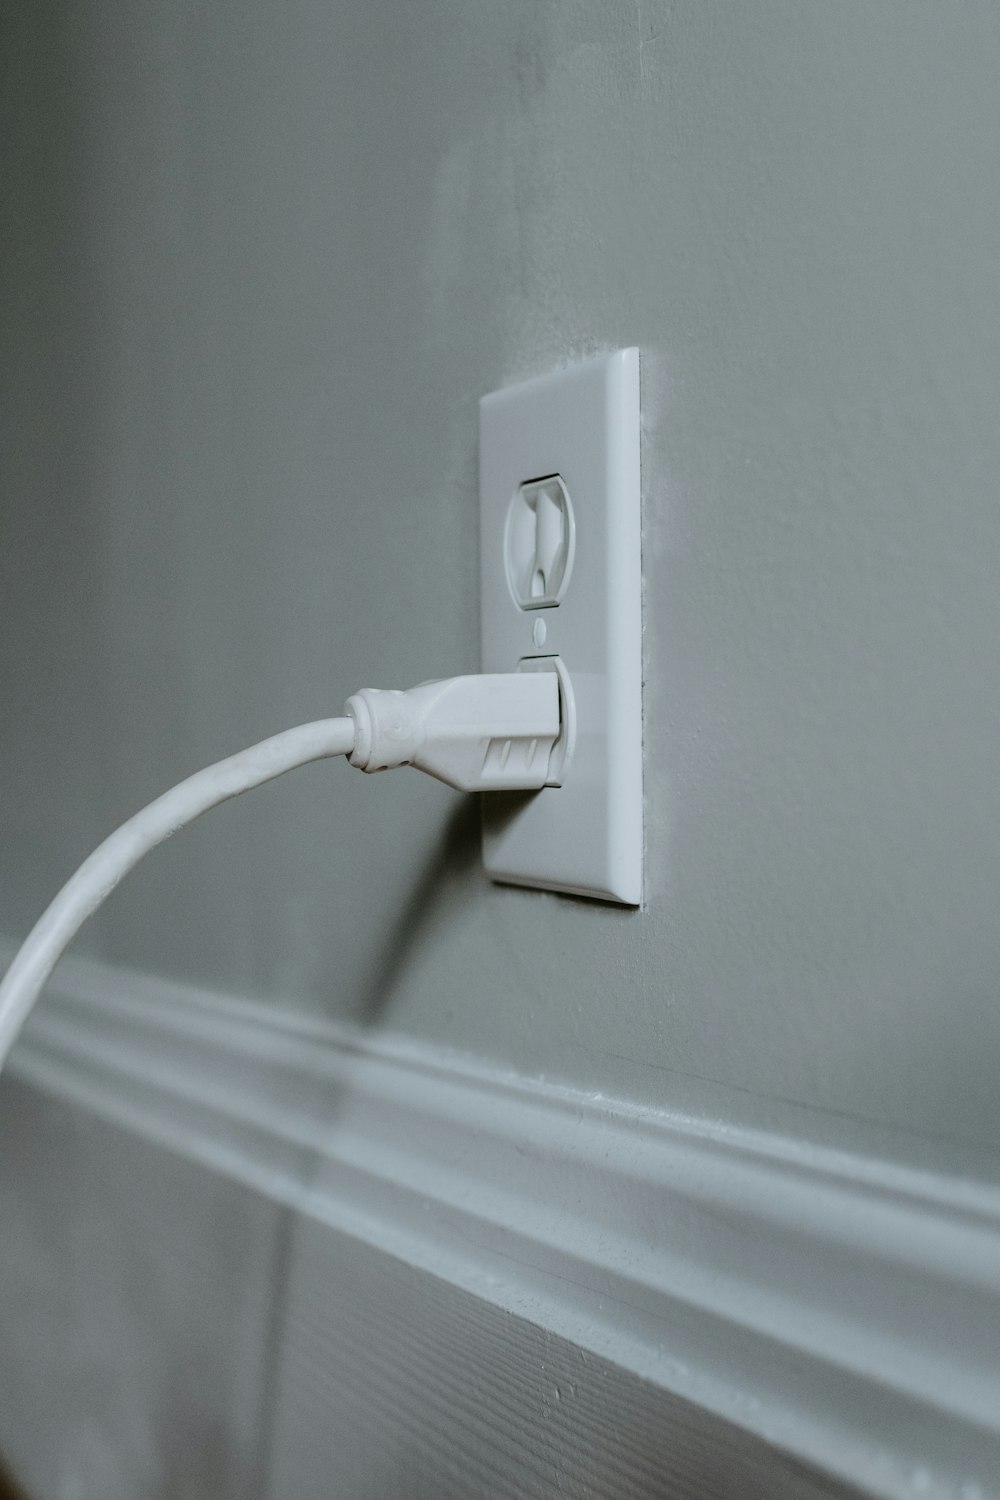 흰색 전기 소켓에 연결된 흰색 USB 케이블